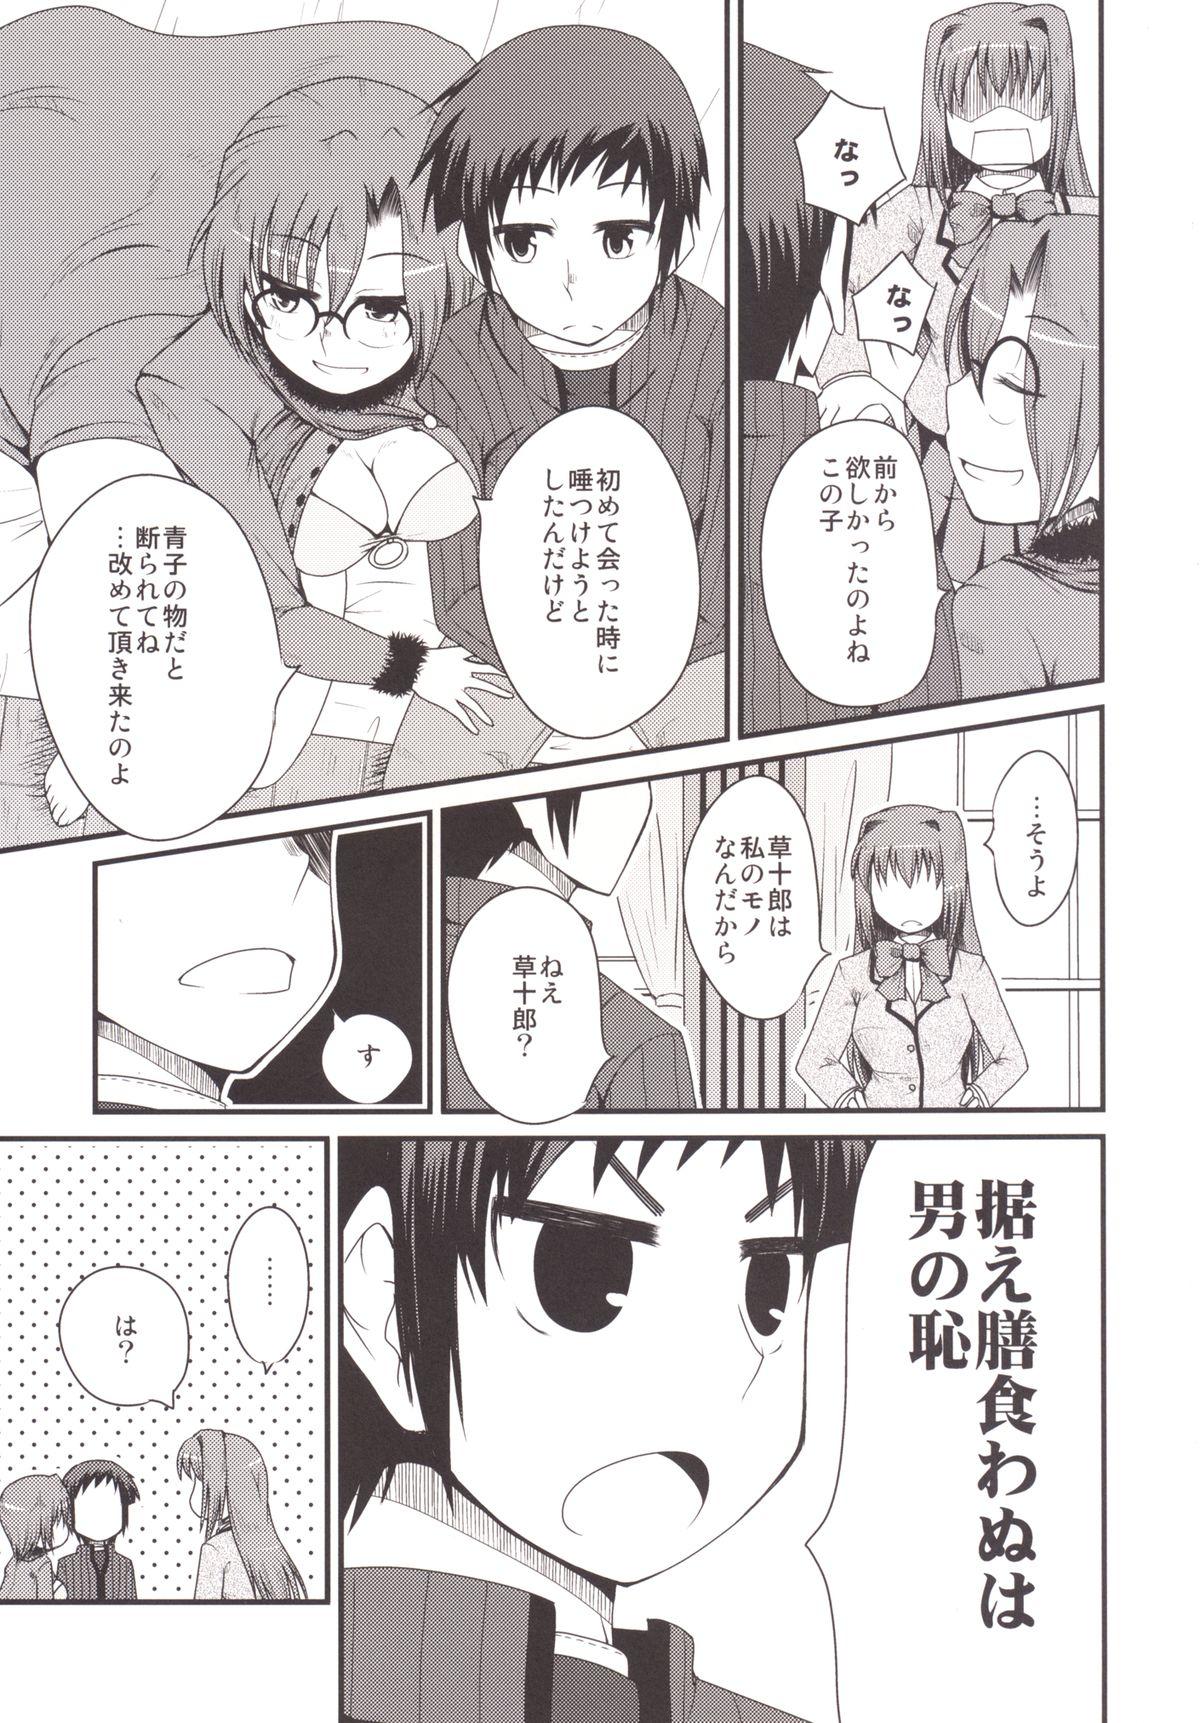 Pareja Ittsu Main 2 - Mahou tsukai no yoru Amateurs - Page 7